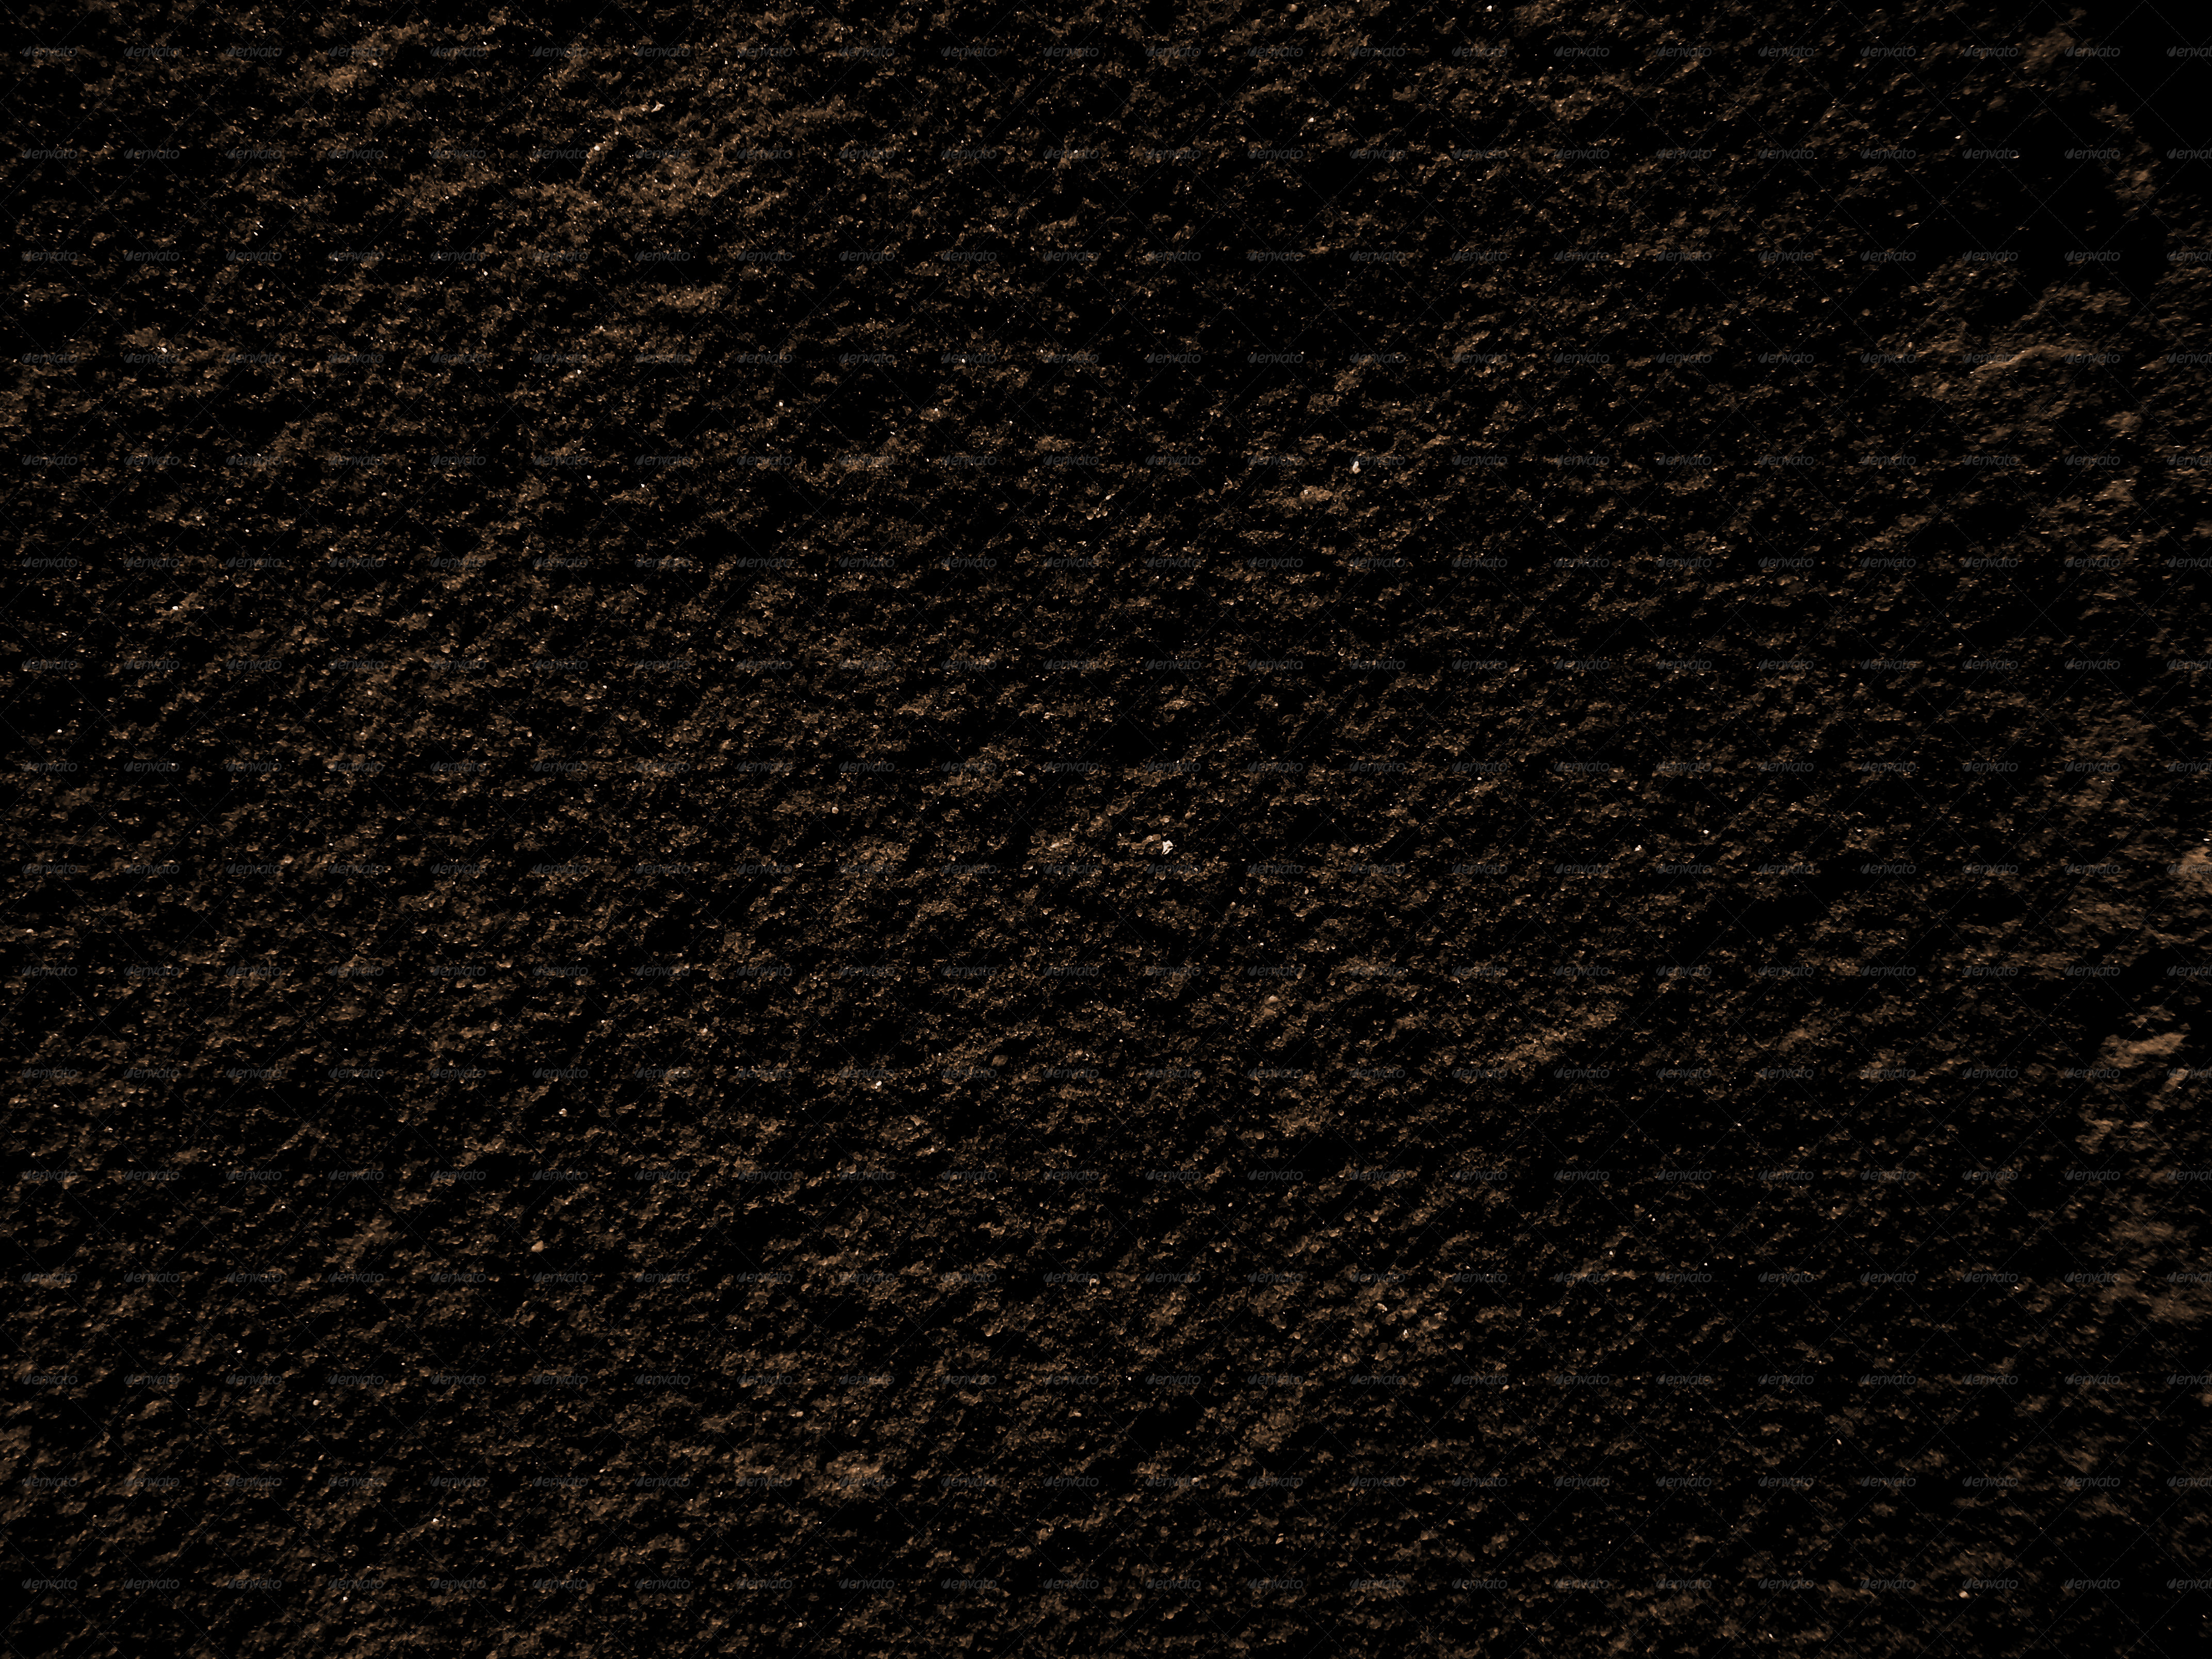 Underground Dirt Textures by stacydavid | GraphicRiver